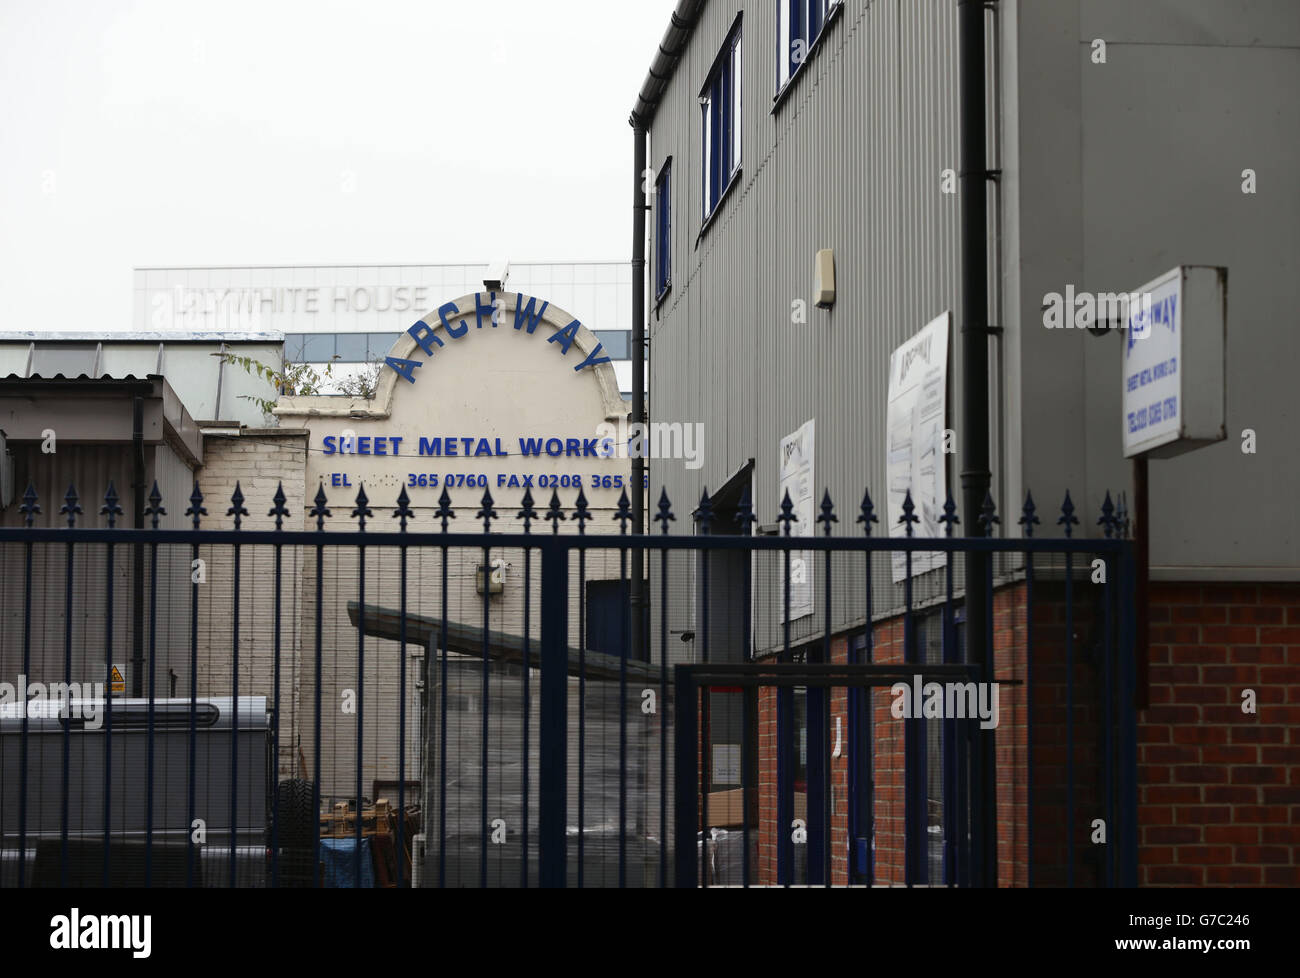 Una vista de Archway Steel Metal Works en Paxton Rd, al norte de Londres, que está al lado del estadio de fútbol Tottenham Hotspur's White Hart Lane. Foto de stock